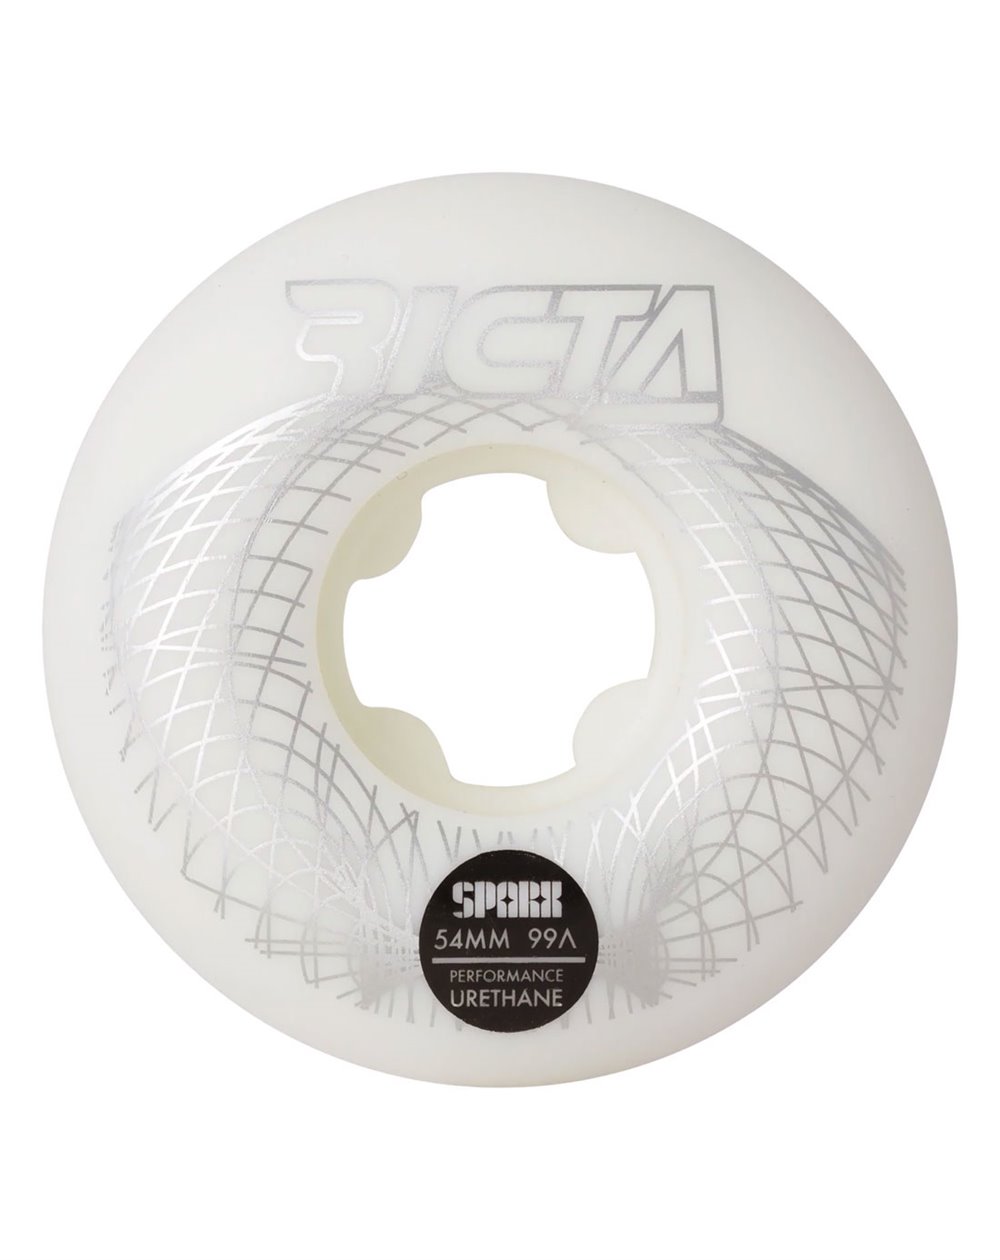 Ricta Sparx (Wireframe) 54mm 99A Skateboard Räder 4 er Pack